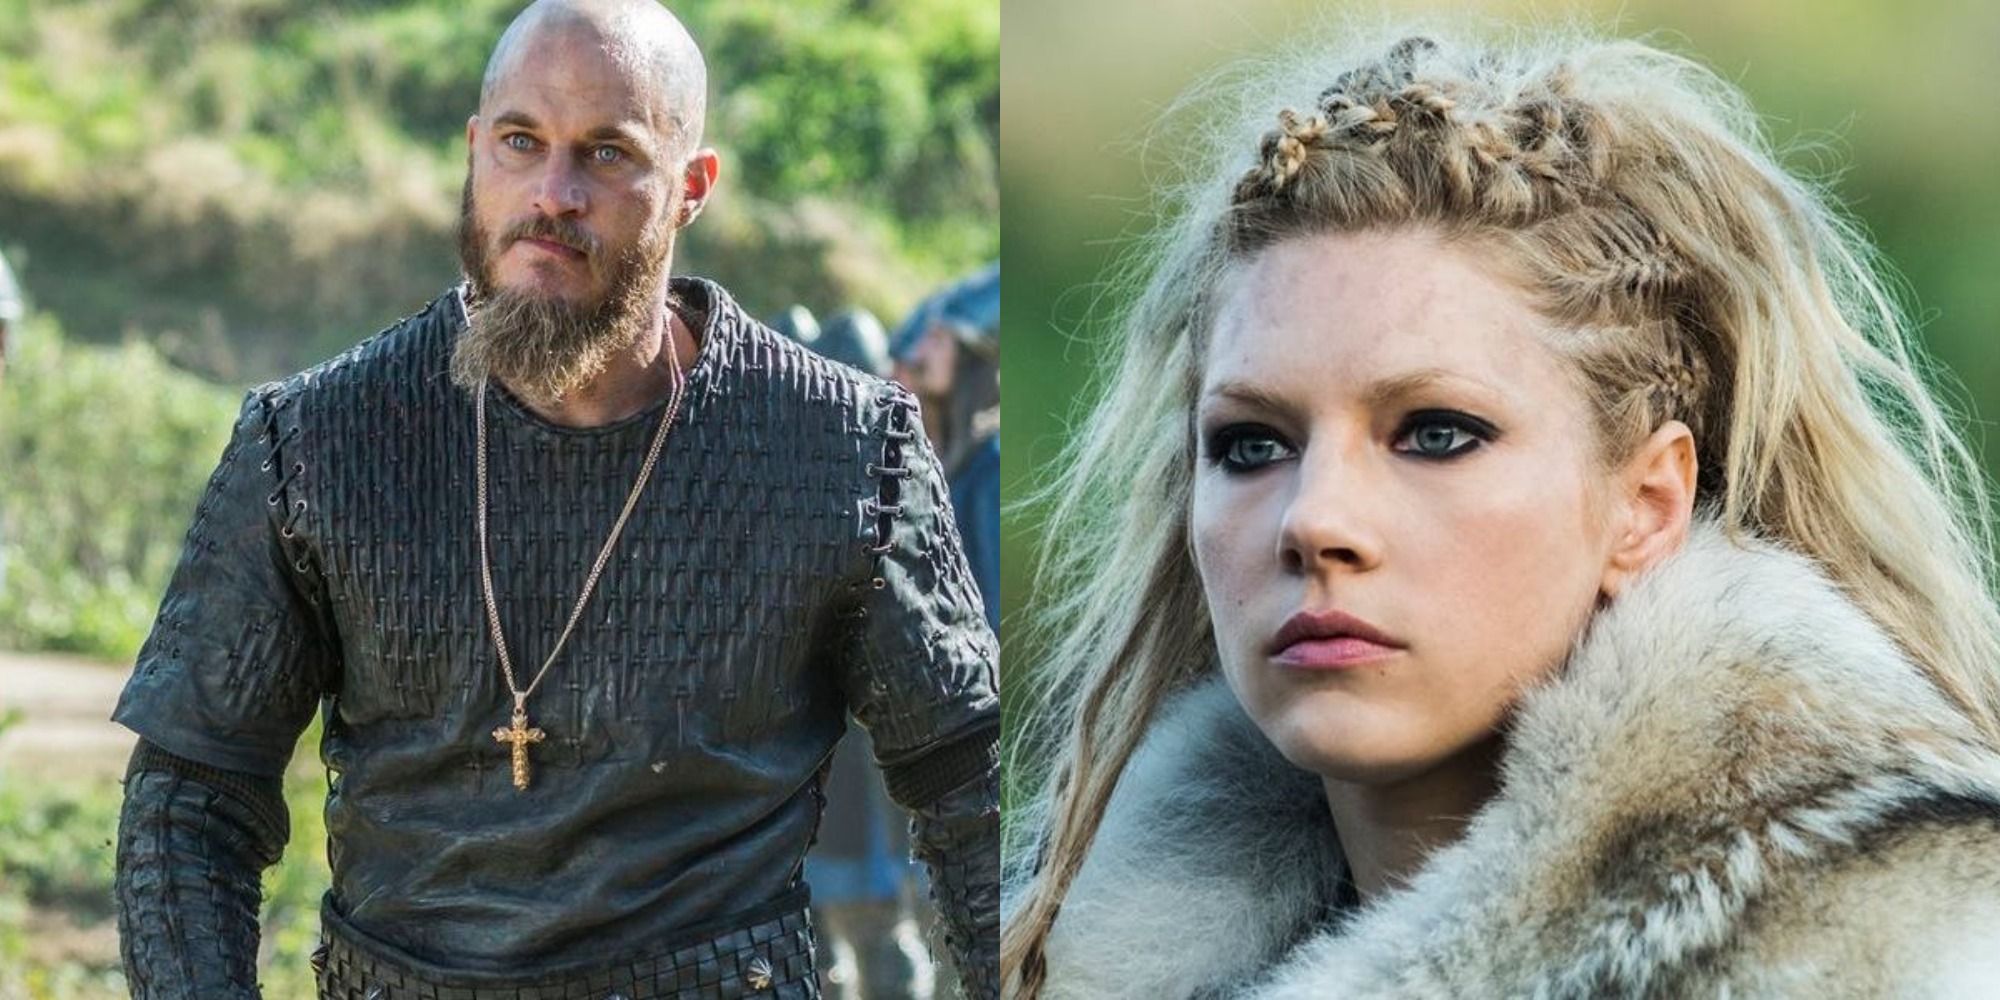 Vikings season 6: Fans convinced Bjorn should be killed by